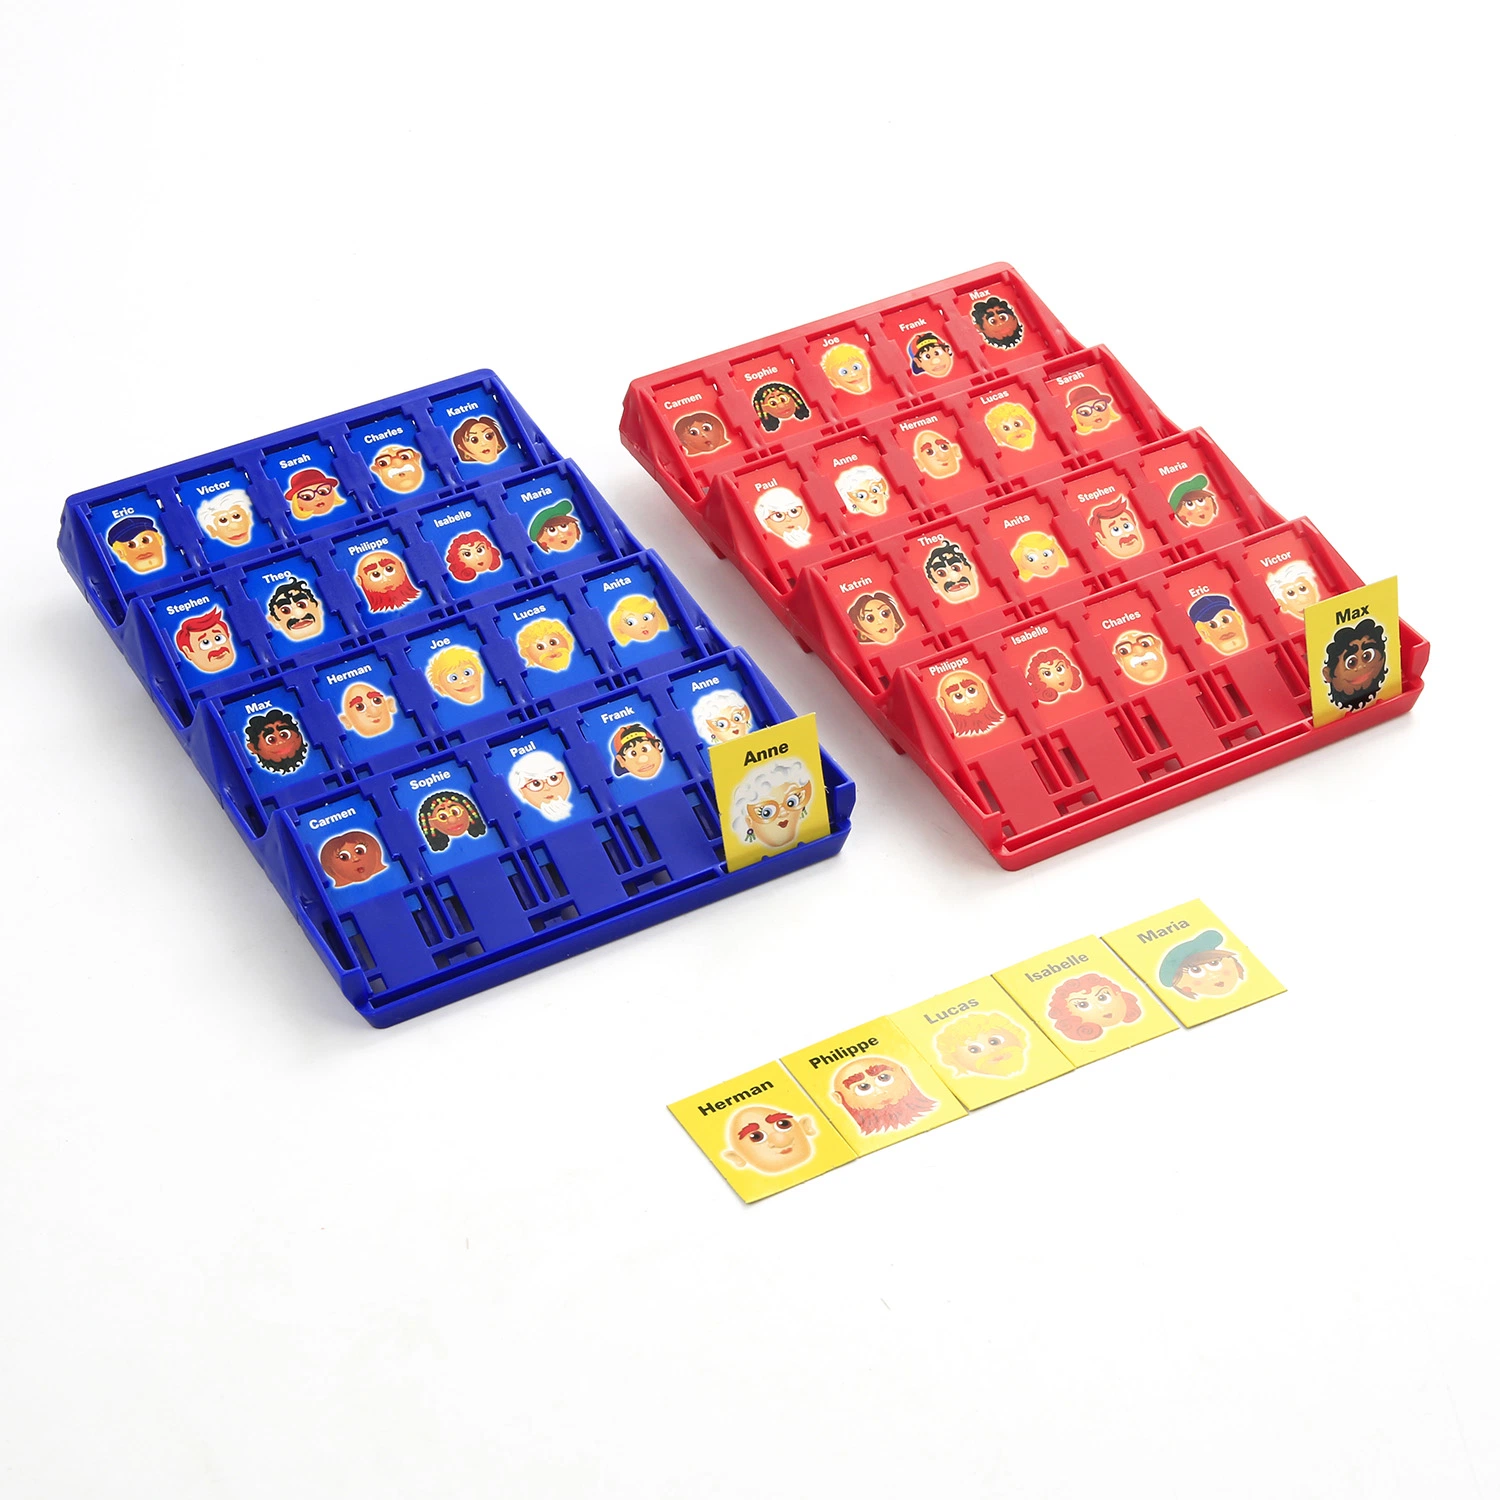 QS juguetes de plástico divertido juego de la familia de Batalla intelectual jugando juego de mesa juguetes educativos Mini juego de Adivina quién rompecabezas juguetes para niños